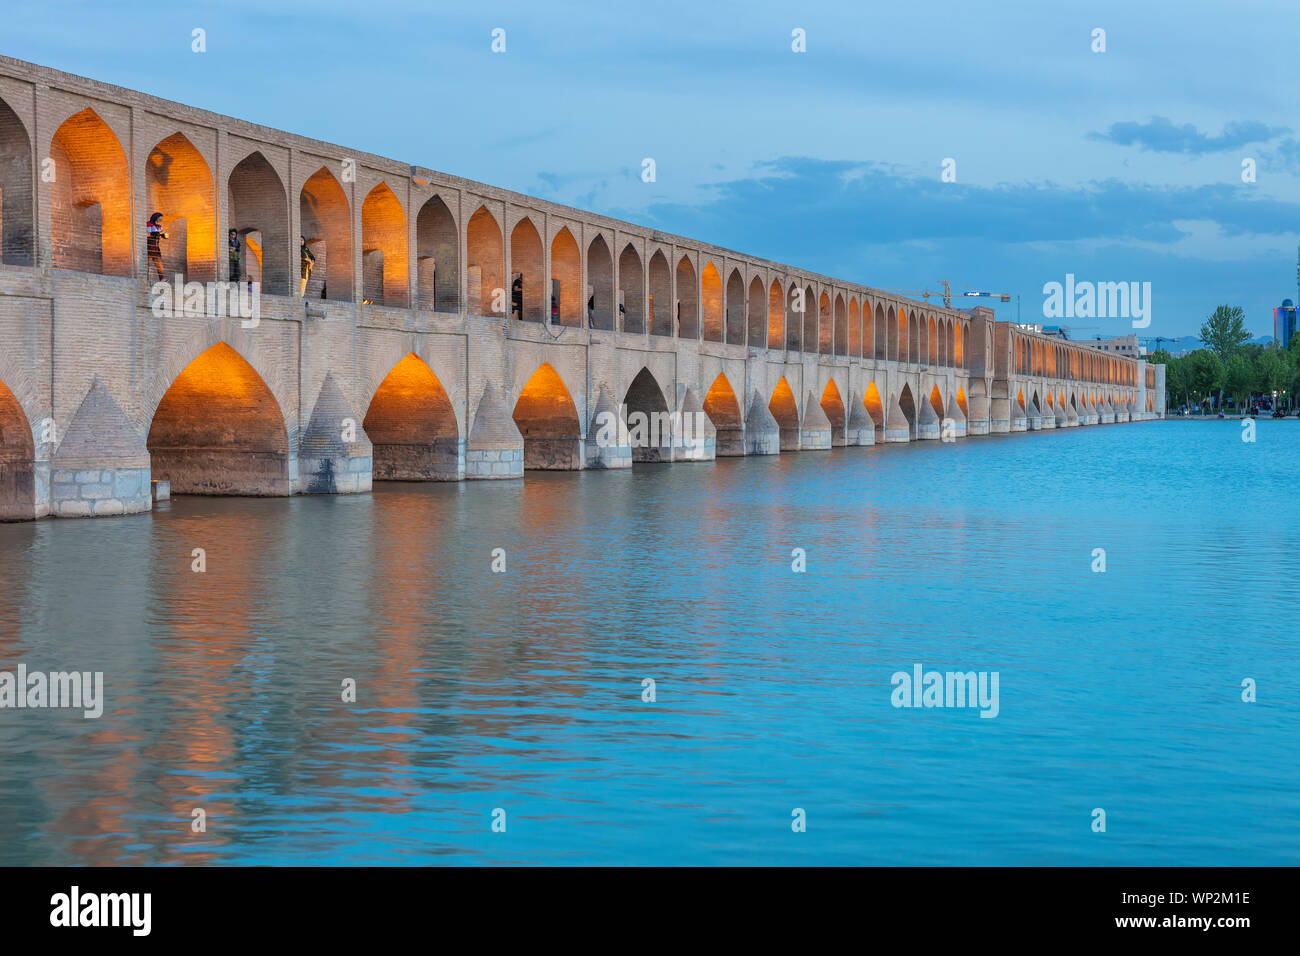 Si-O-se-pol, Allahverdi Khan Bridge at night, Zayanderud river, Ispahan, Isfahan, Iran Province Banque D'Images